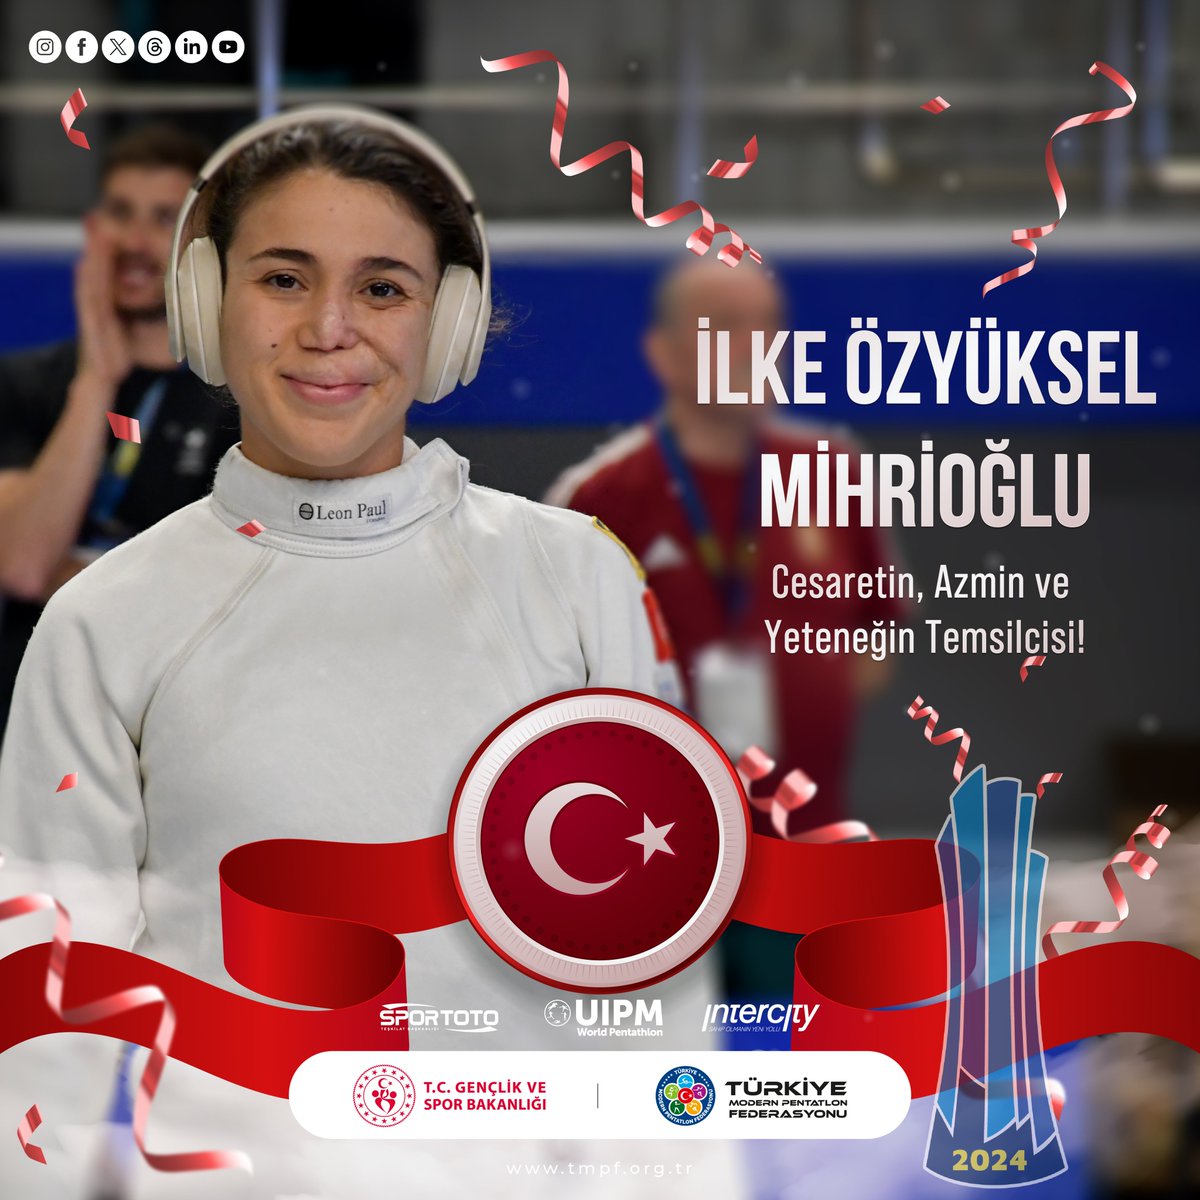 🏆🤺🌟 Heyecan verici haberler! İlke Özyüksel Mihrioğlu, Budapeşte'de devam eden UIPM Dünya Kupası'nda yarı final B grubunu lider bitirerek adını finale yazdırdı! 💪🎉 👏👏 Finaldeki performansı için ona destek olmak için buradayız! Gösterdiği azim ve yetenekle bizi…